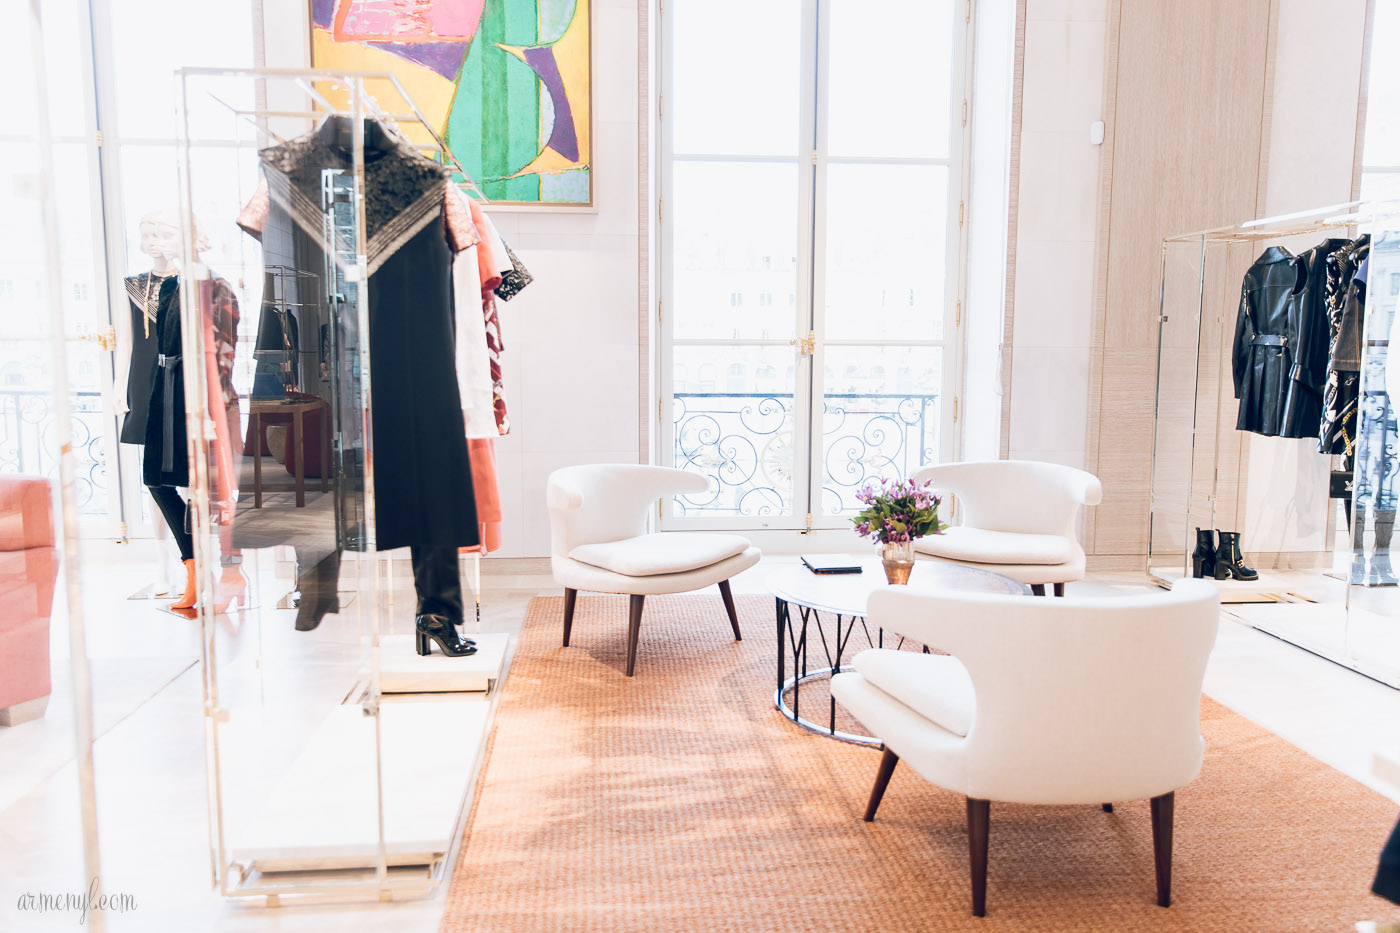 Louis Vuitton returns home: Inside the new Place Vendôme store